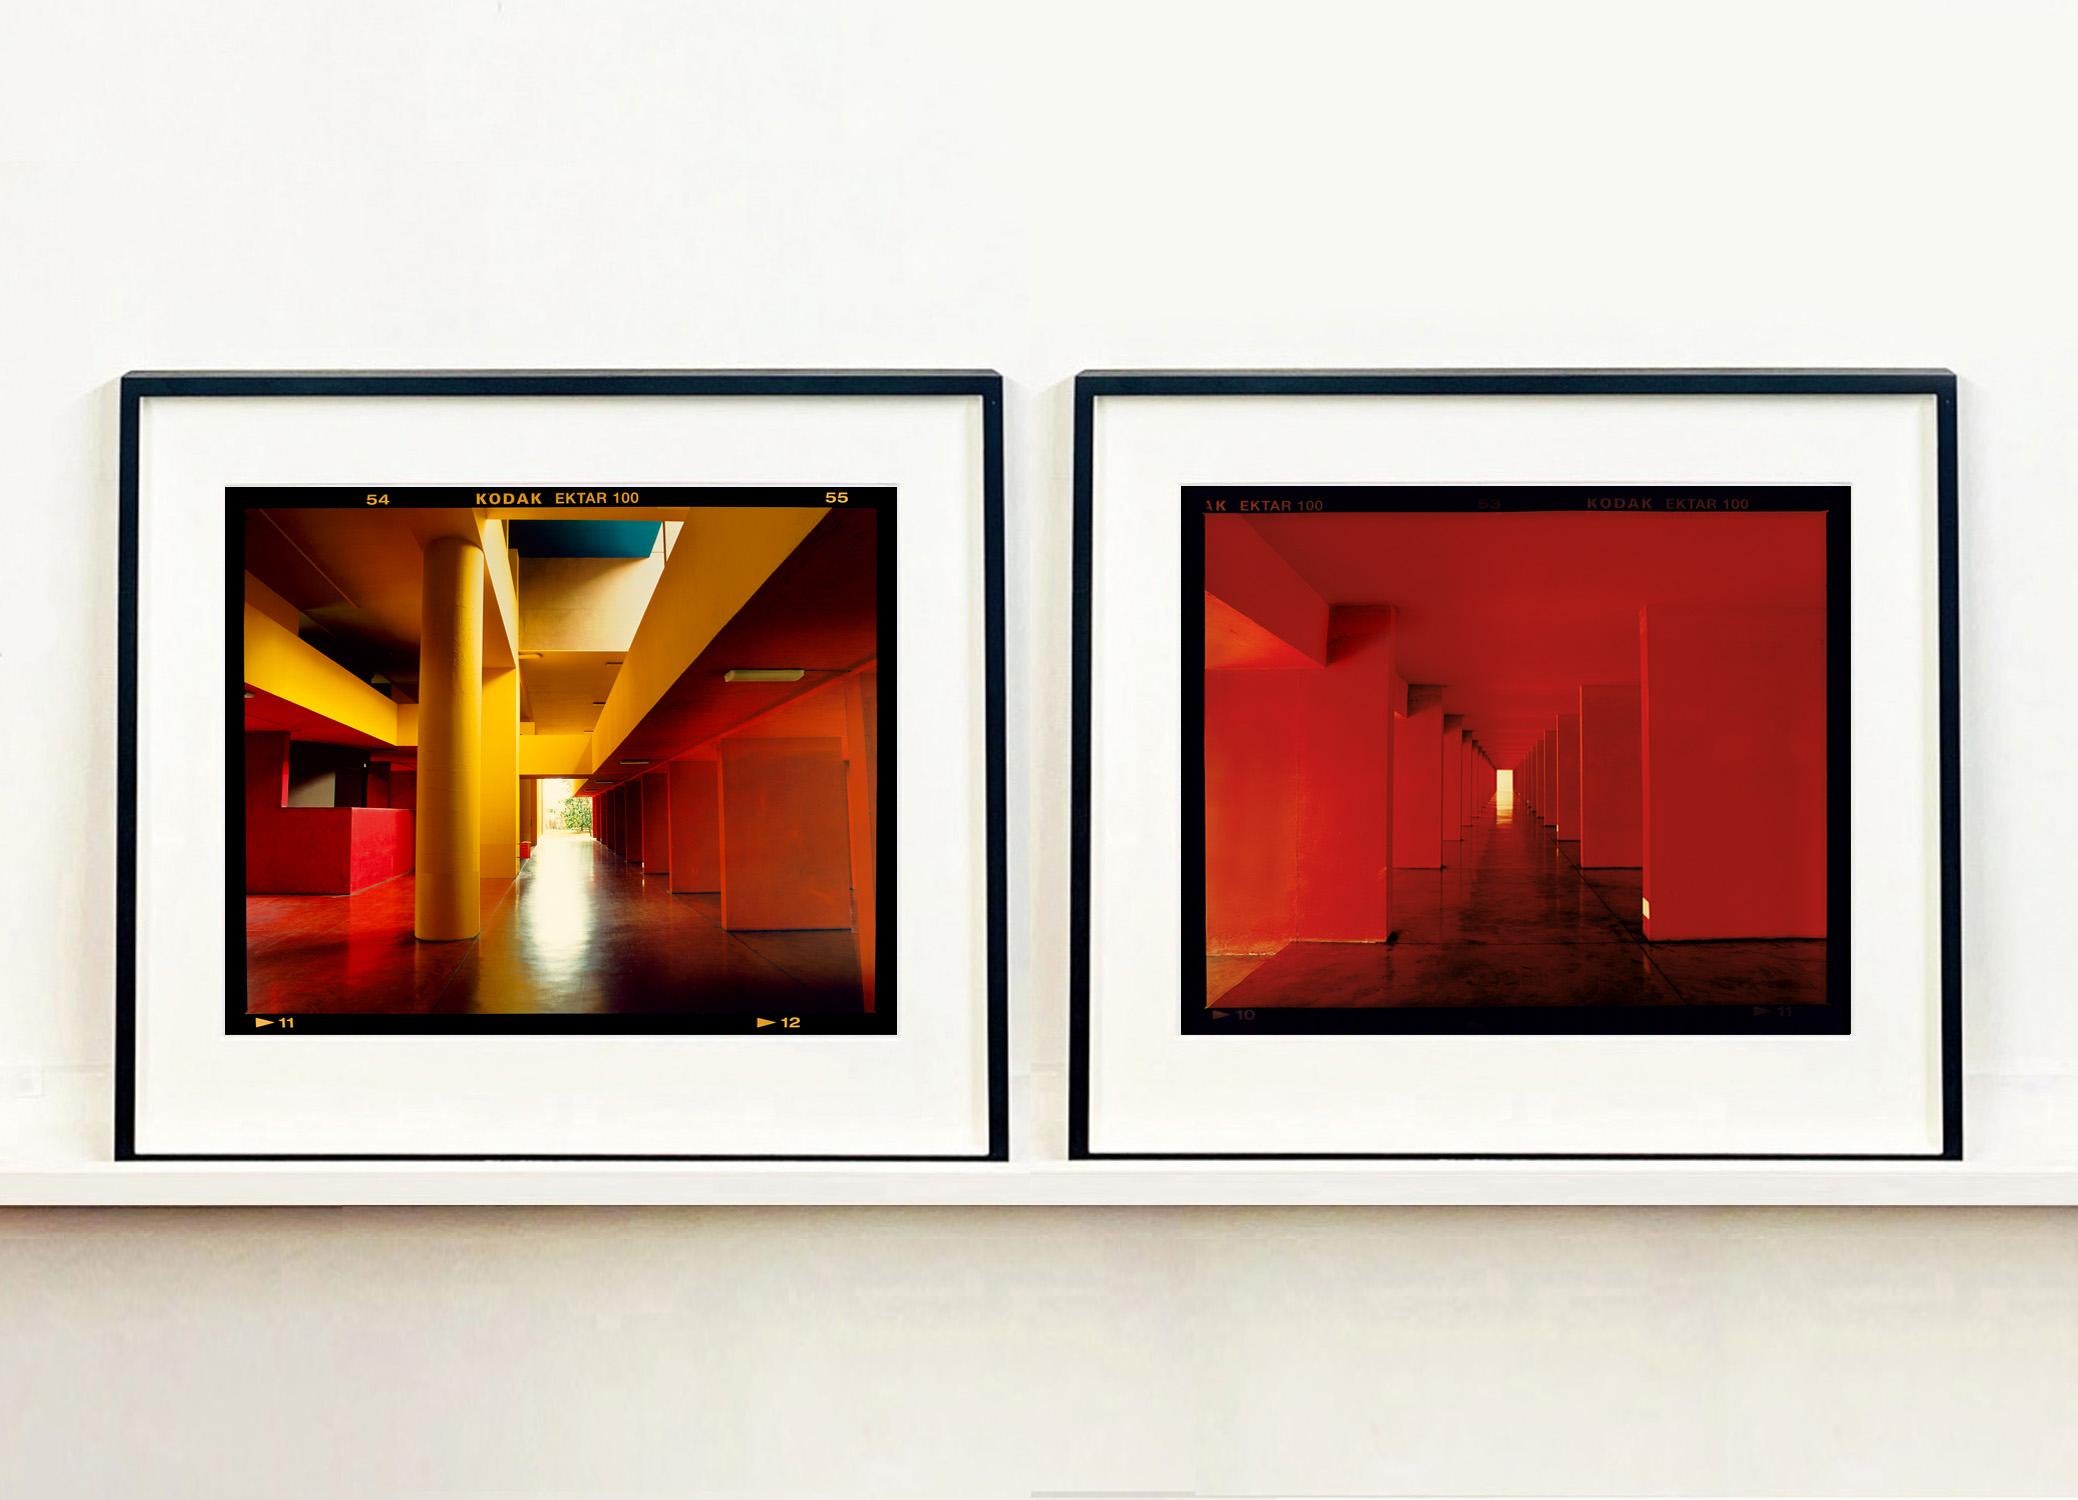 Utopian Foyer II, Mailand – Architekturfotografie der urbanen Farbfotografie (Rot), Color Photograph, von Richard Heeps